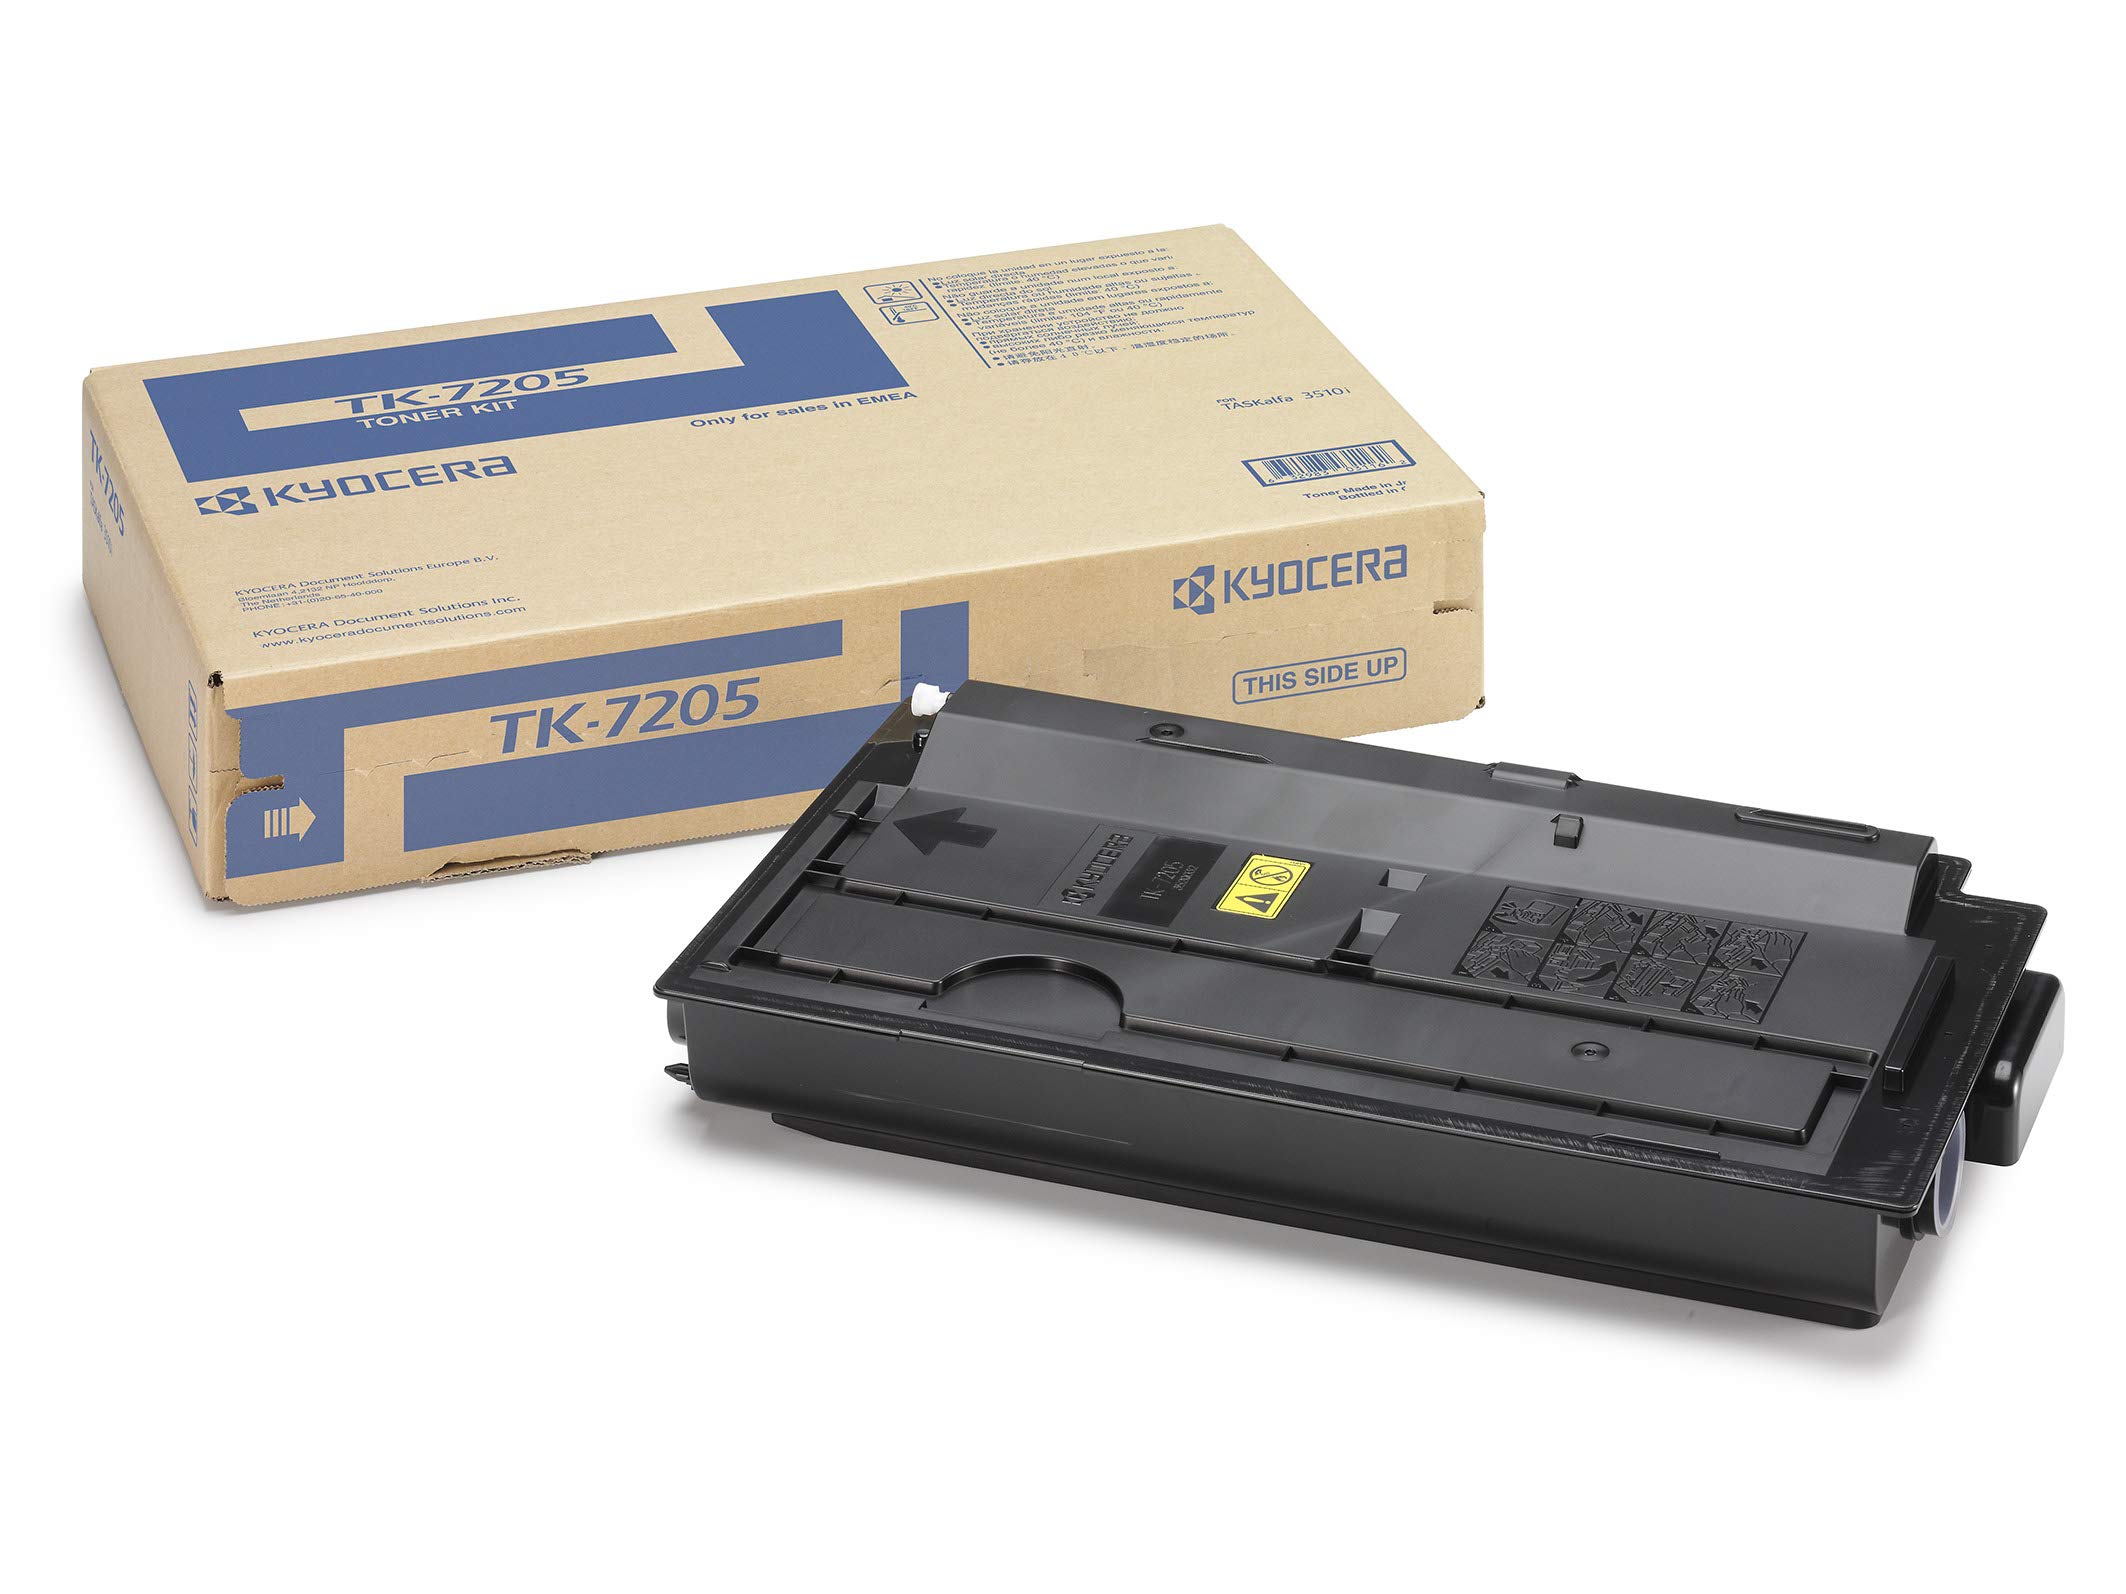 Toner laser Kyocera tk-7205